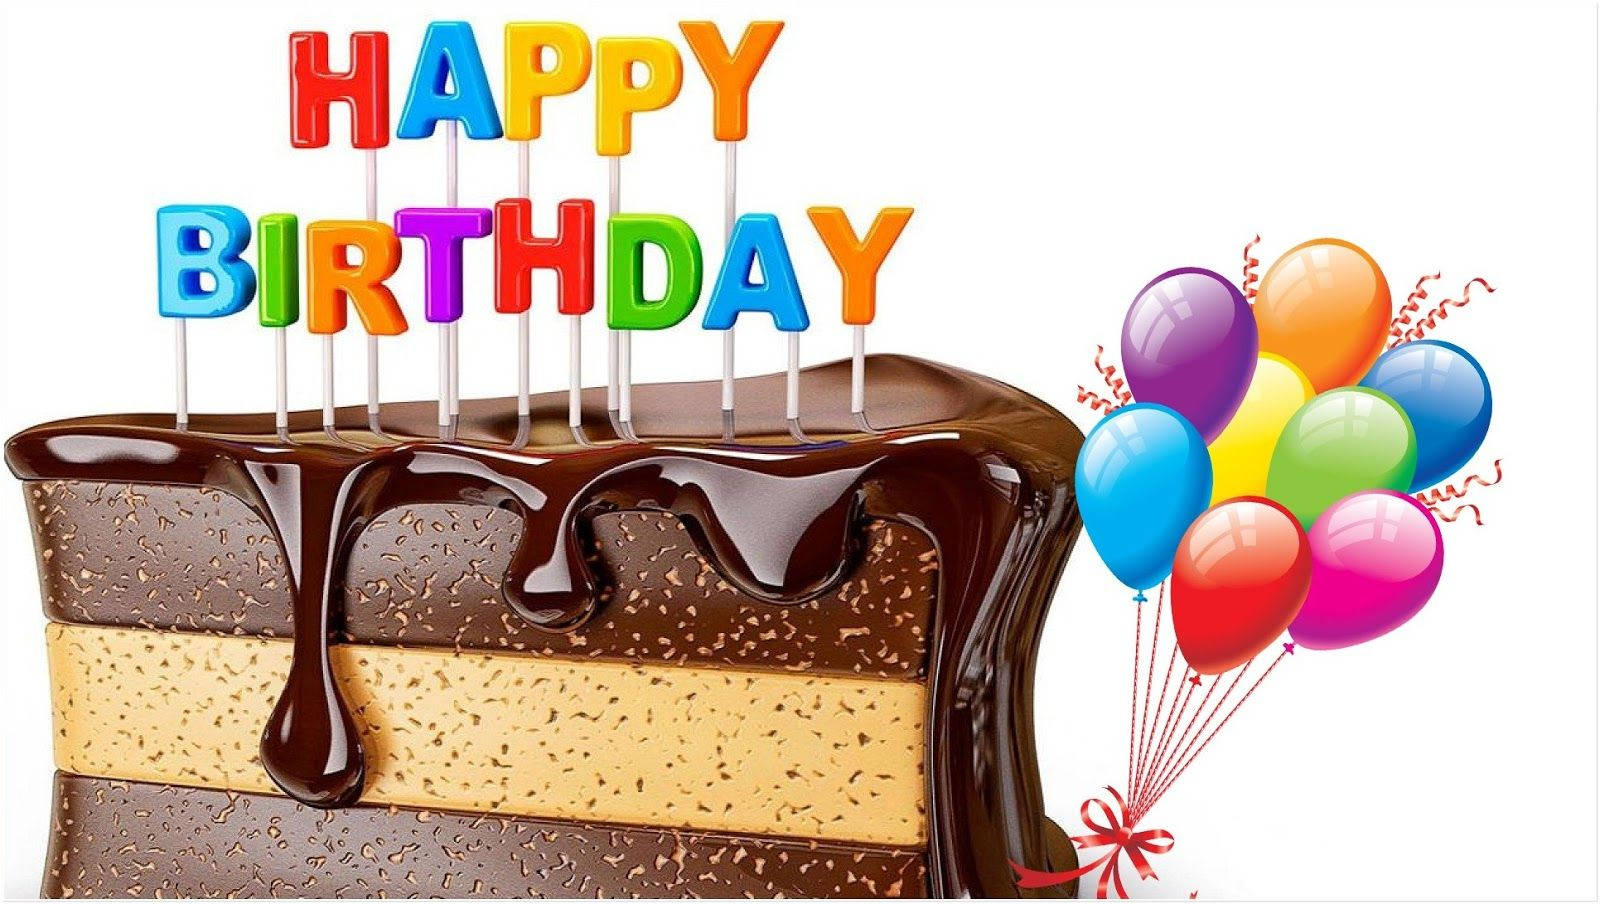 Happy Birthday Chocolate Cake Wallpaper